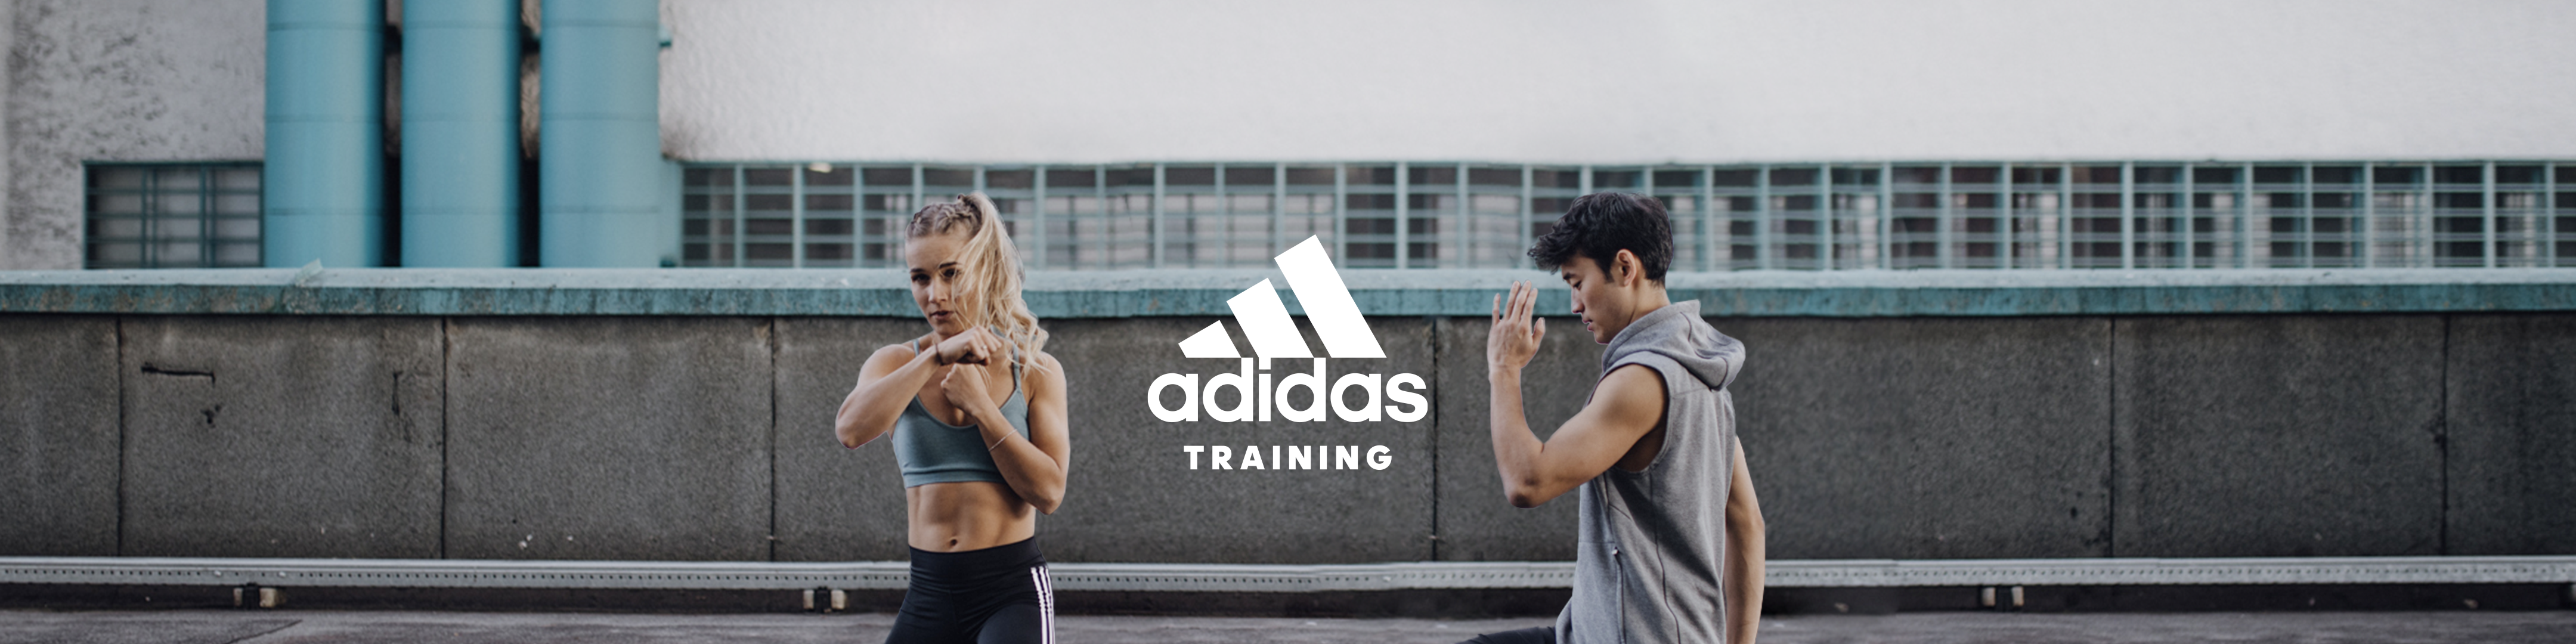 adidas training